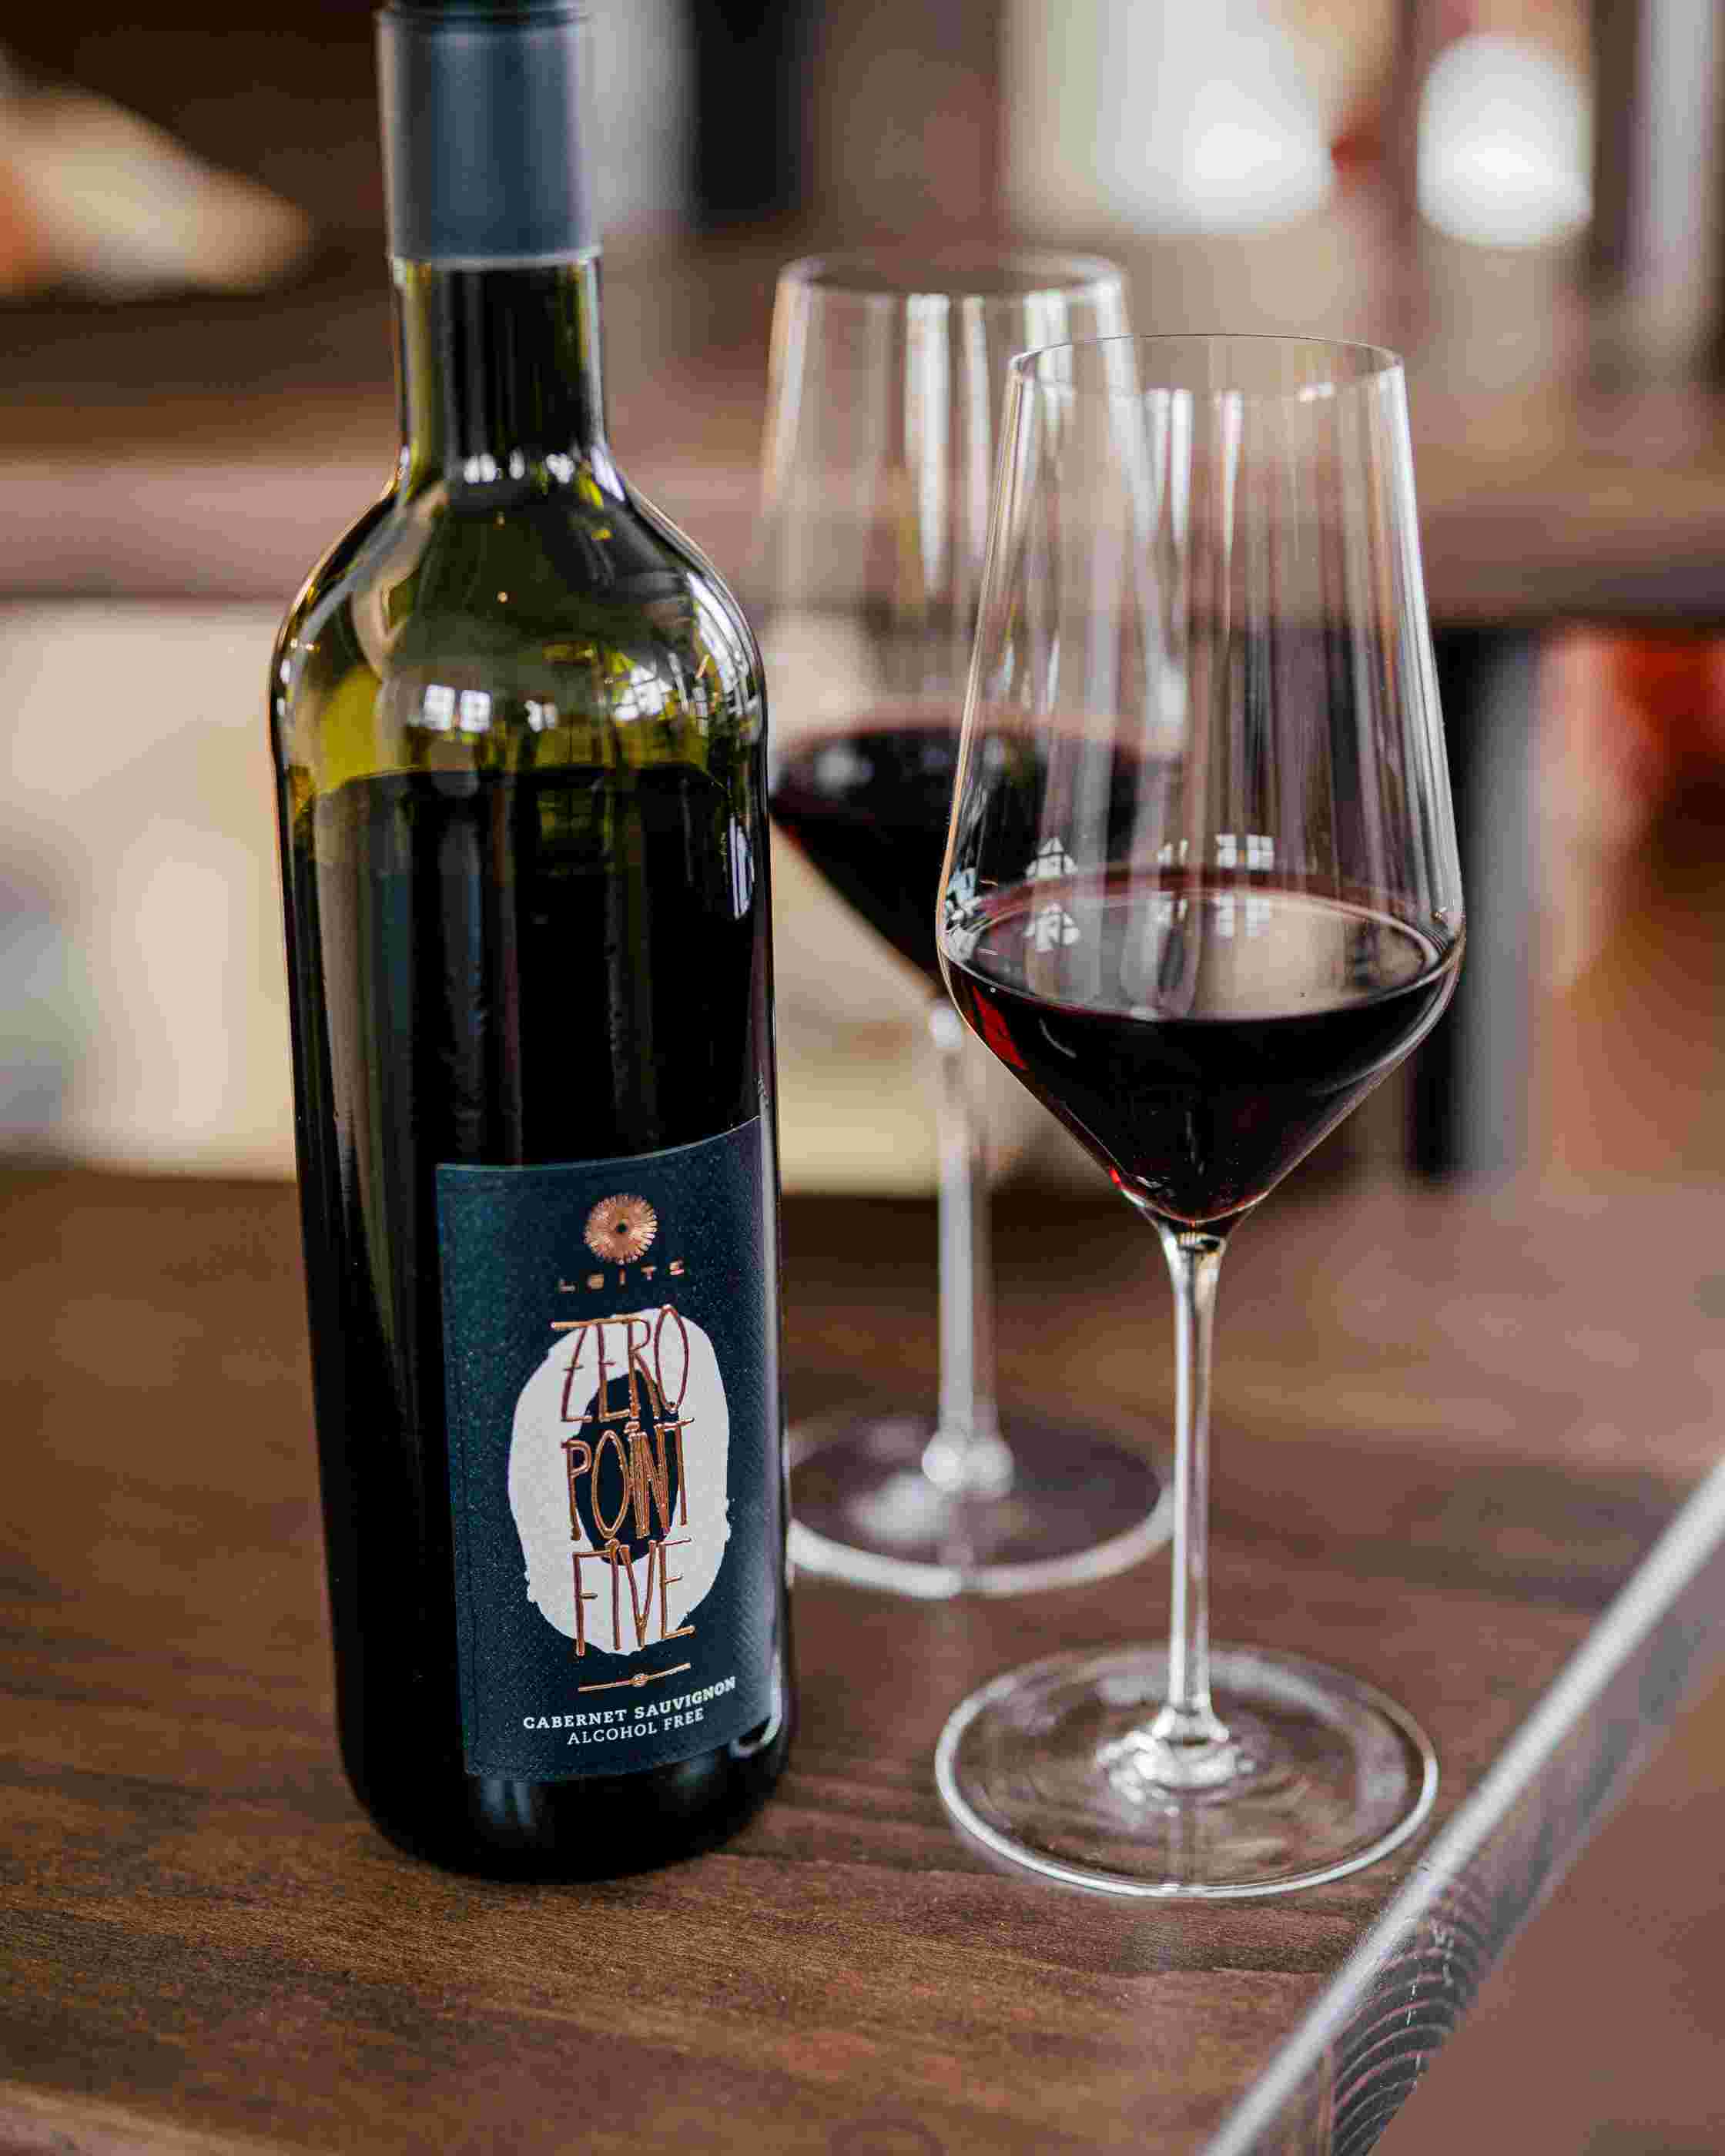 Sfeerfoto Leitz Zero-Point-Five Cabernet Sauvignon. De fles staat op een donkere houten tafel, naast twee wijnglazen. 